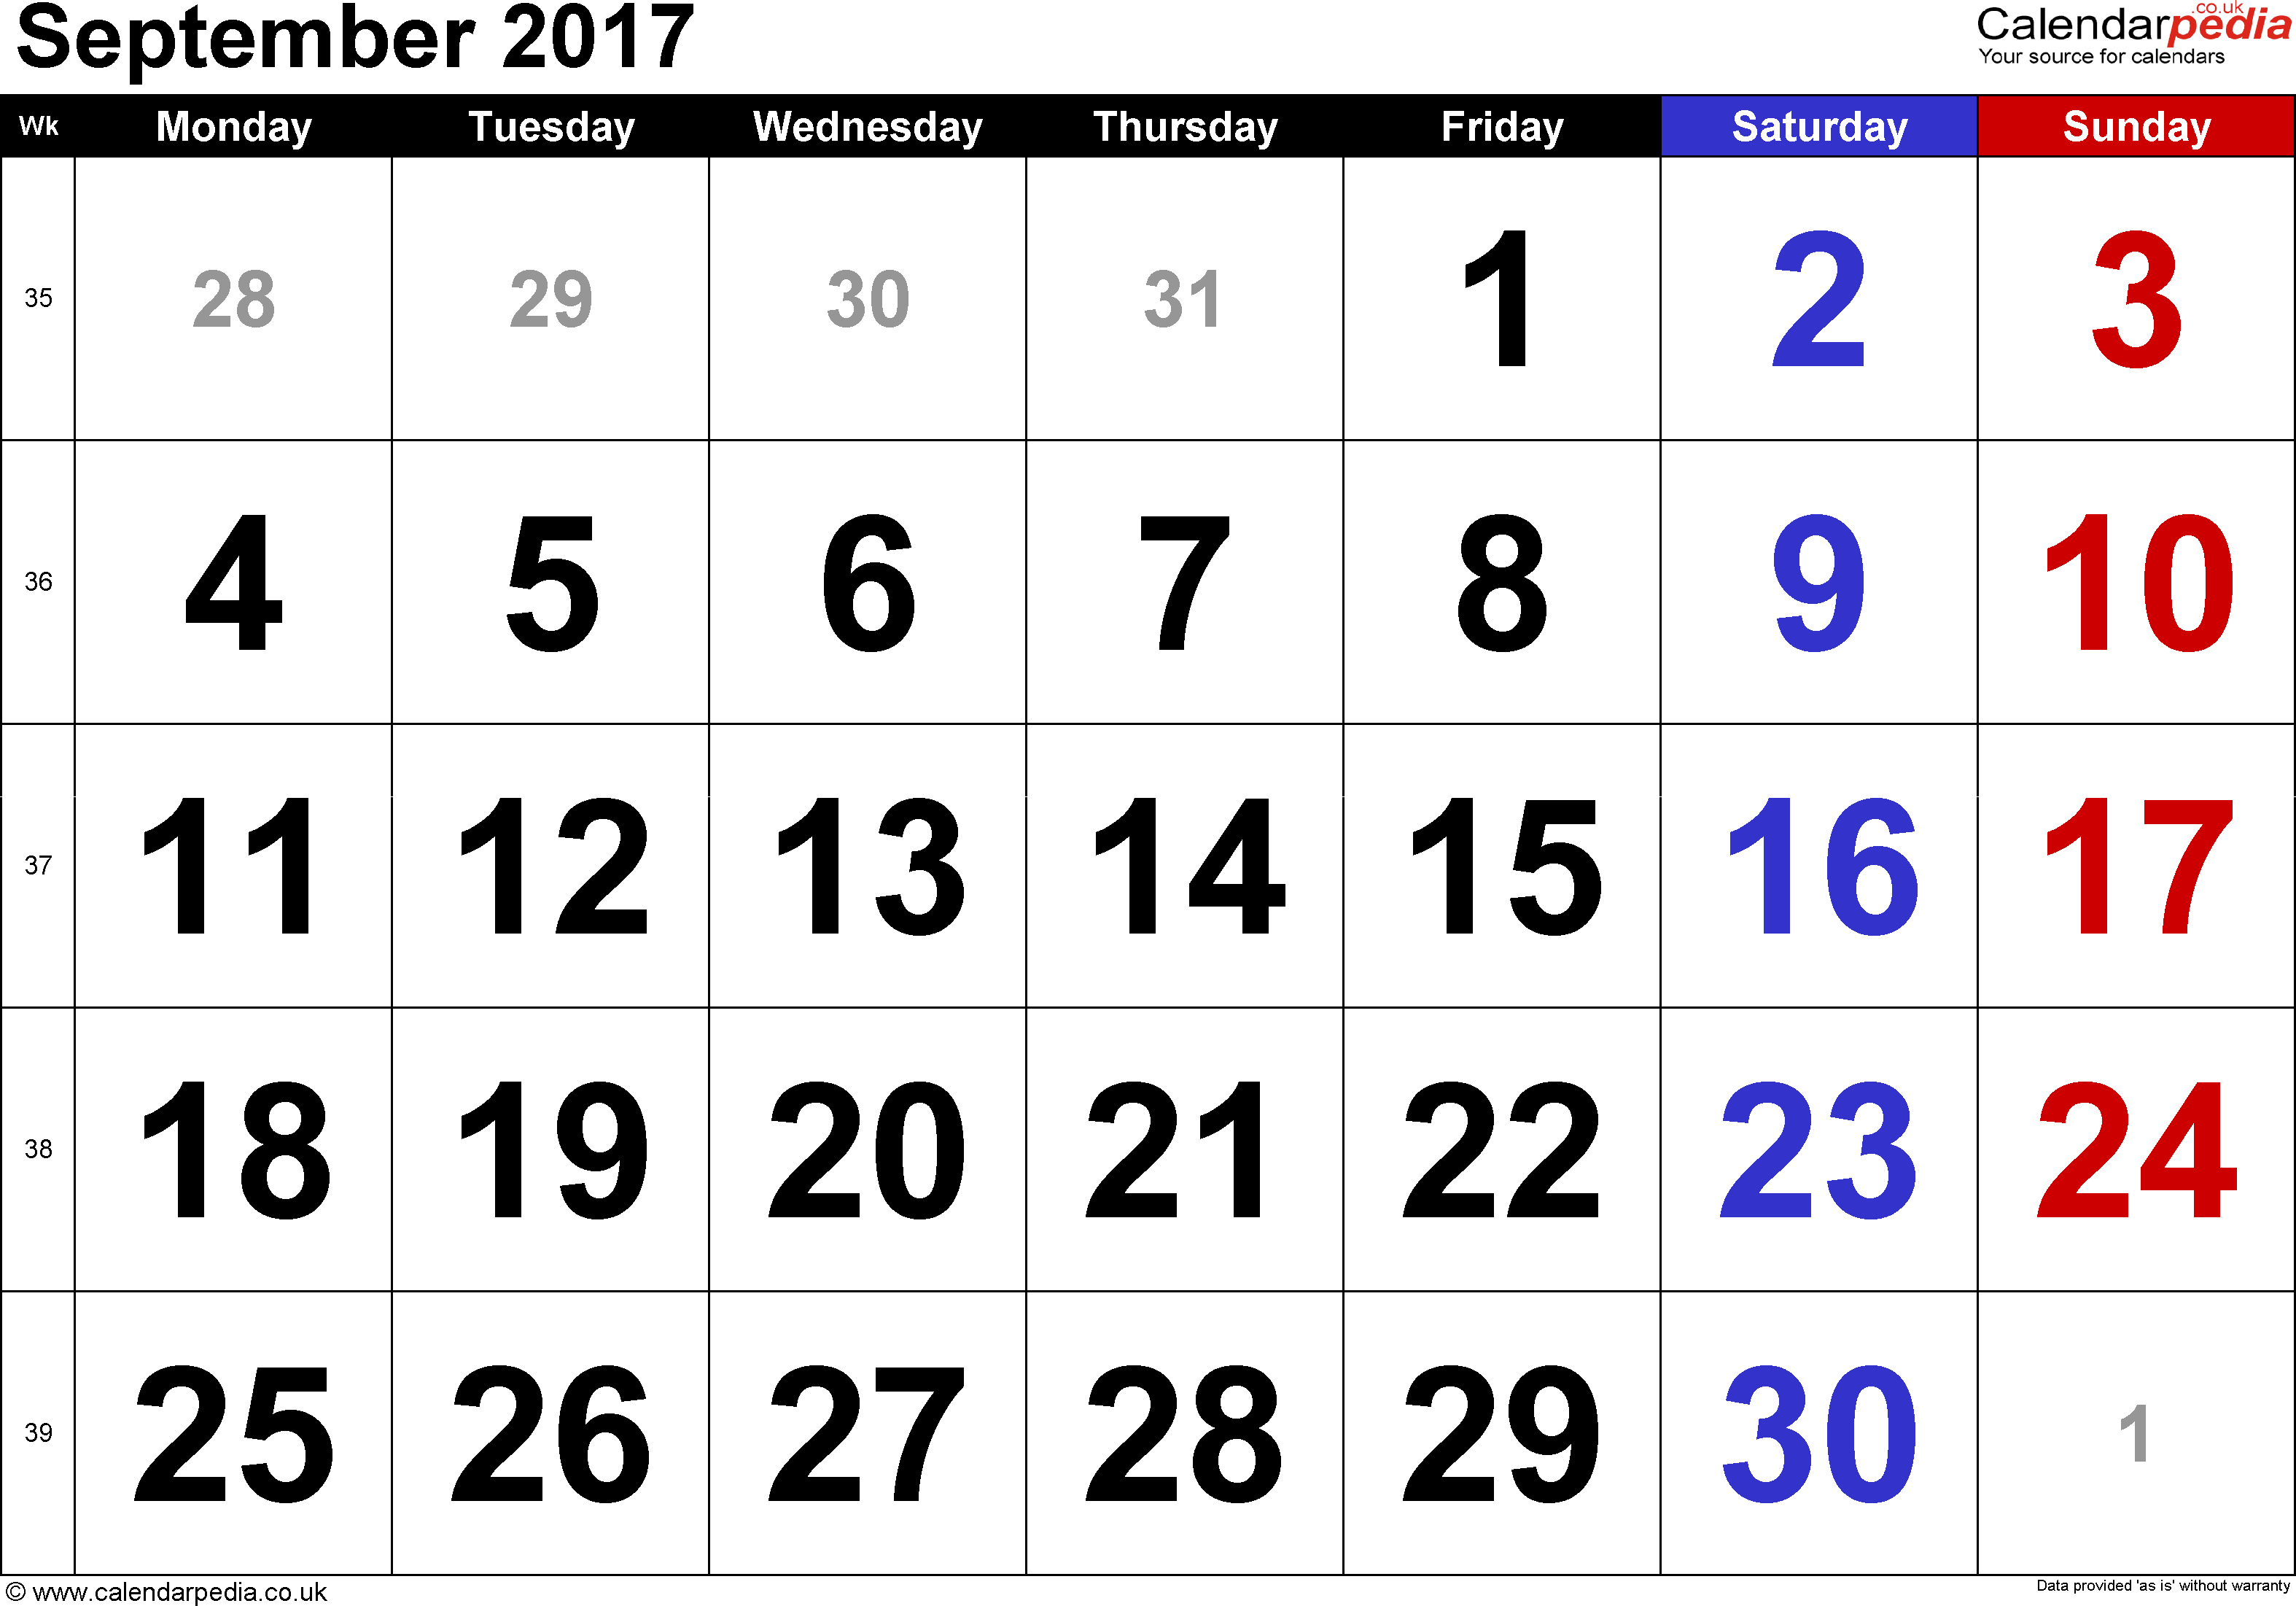 October 2017 Calendar With Holidays Uk | weekly calendar template